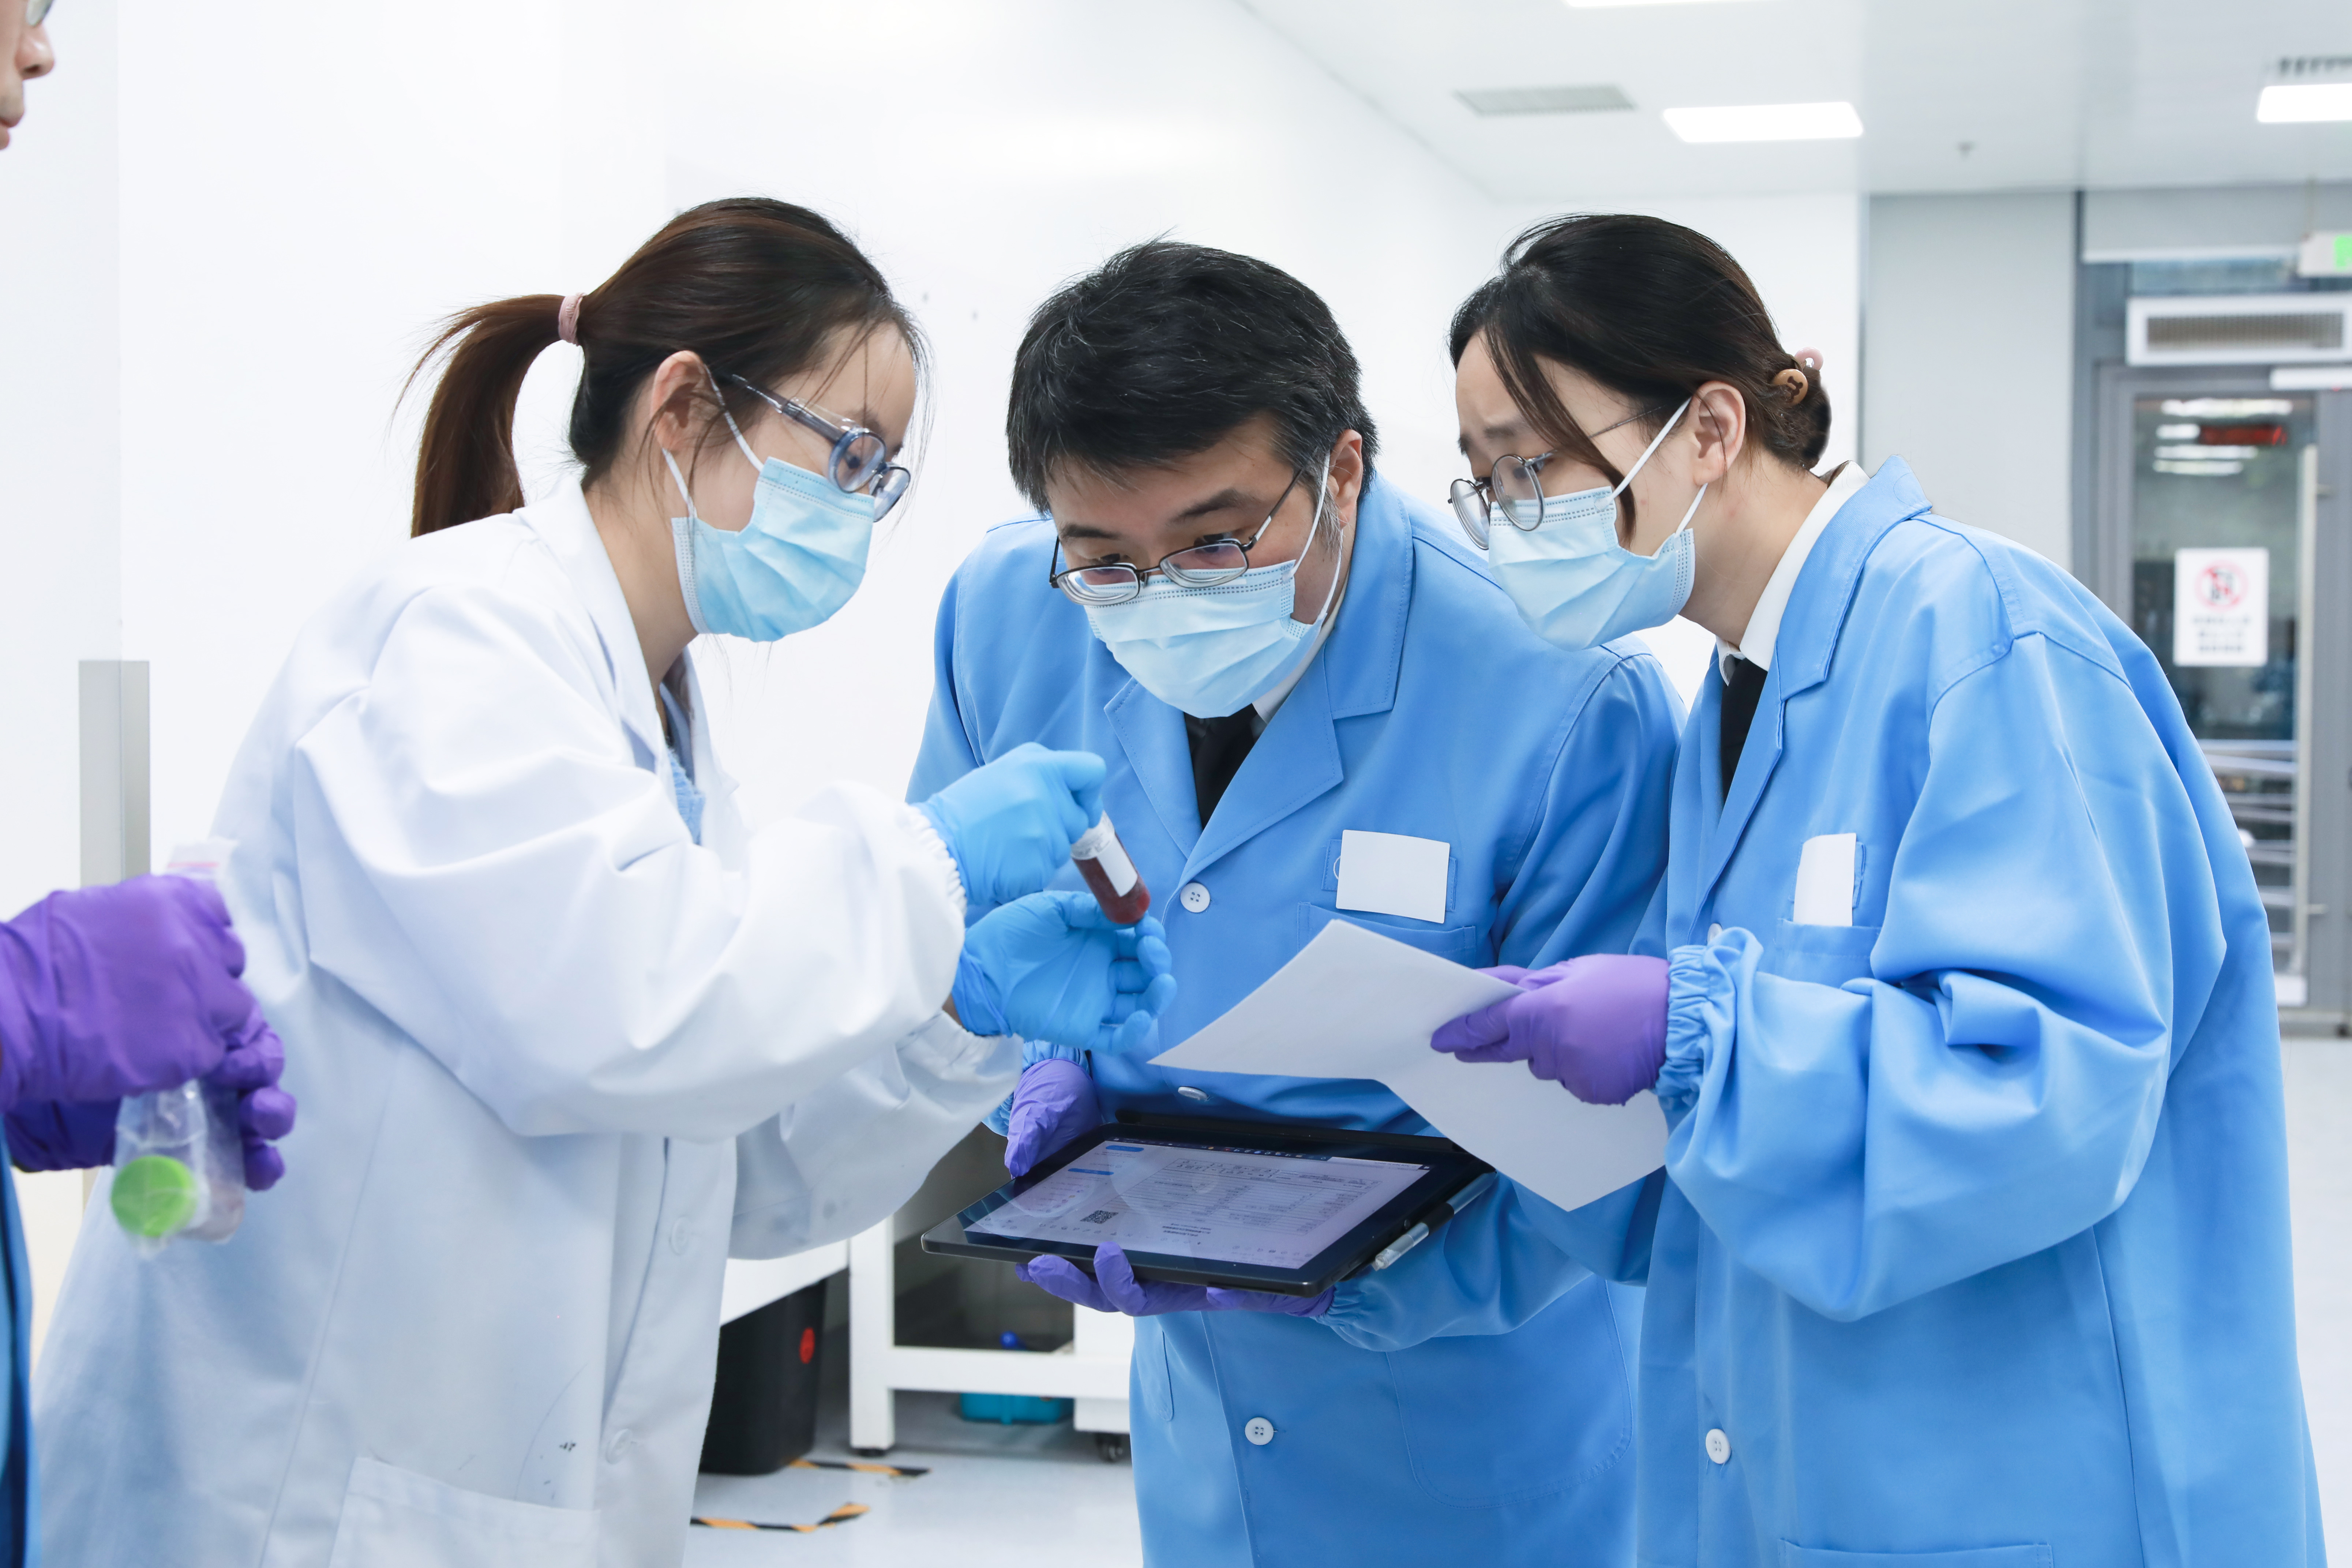 生物医药研发的人血清(1000支,10l)到达上海药明康德新药开发有限公司